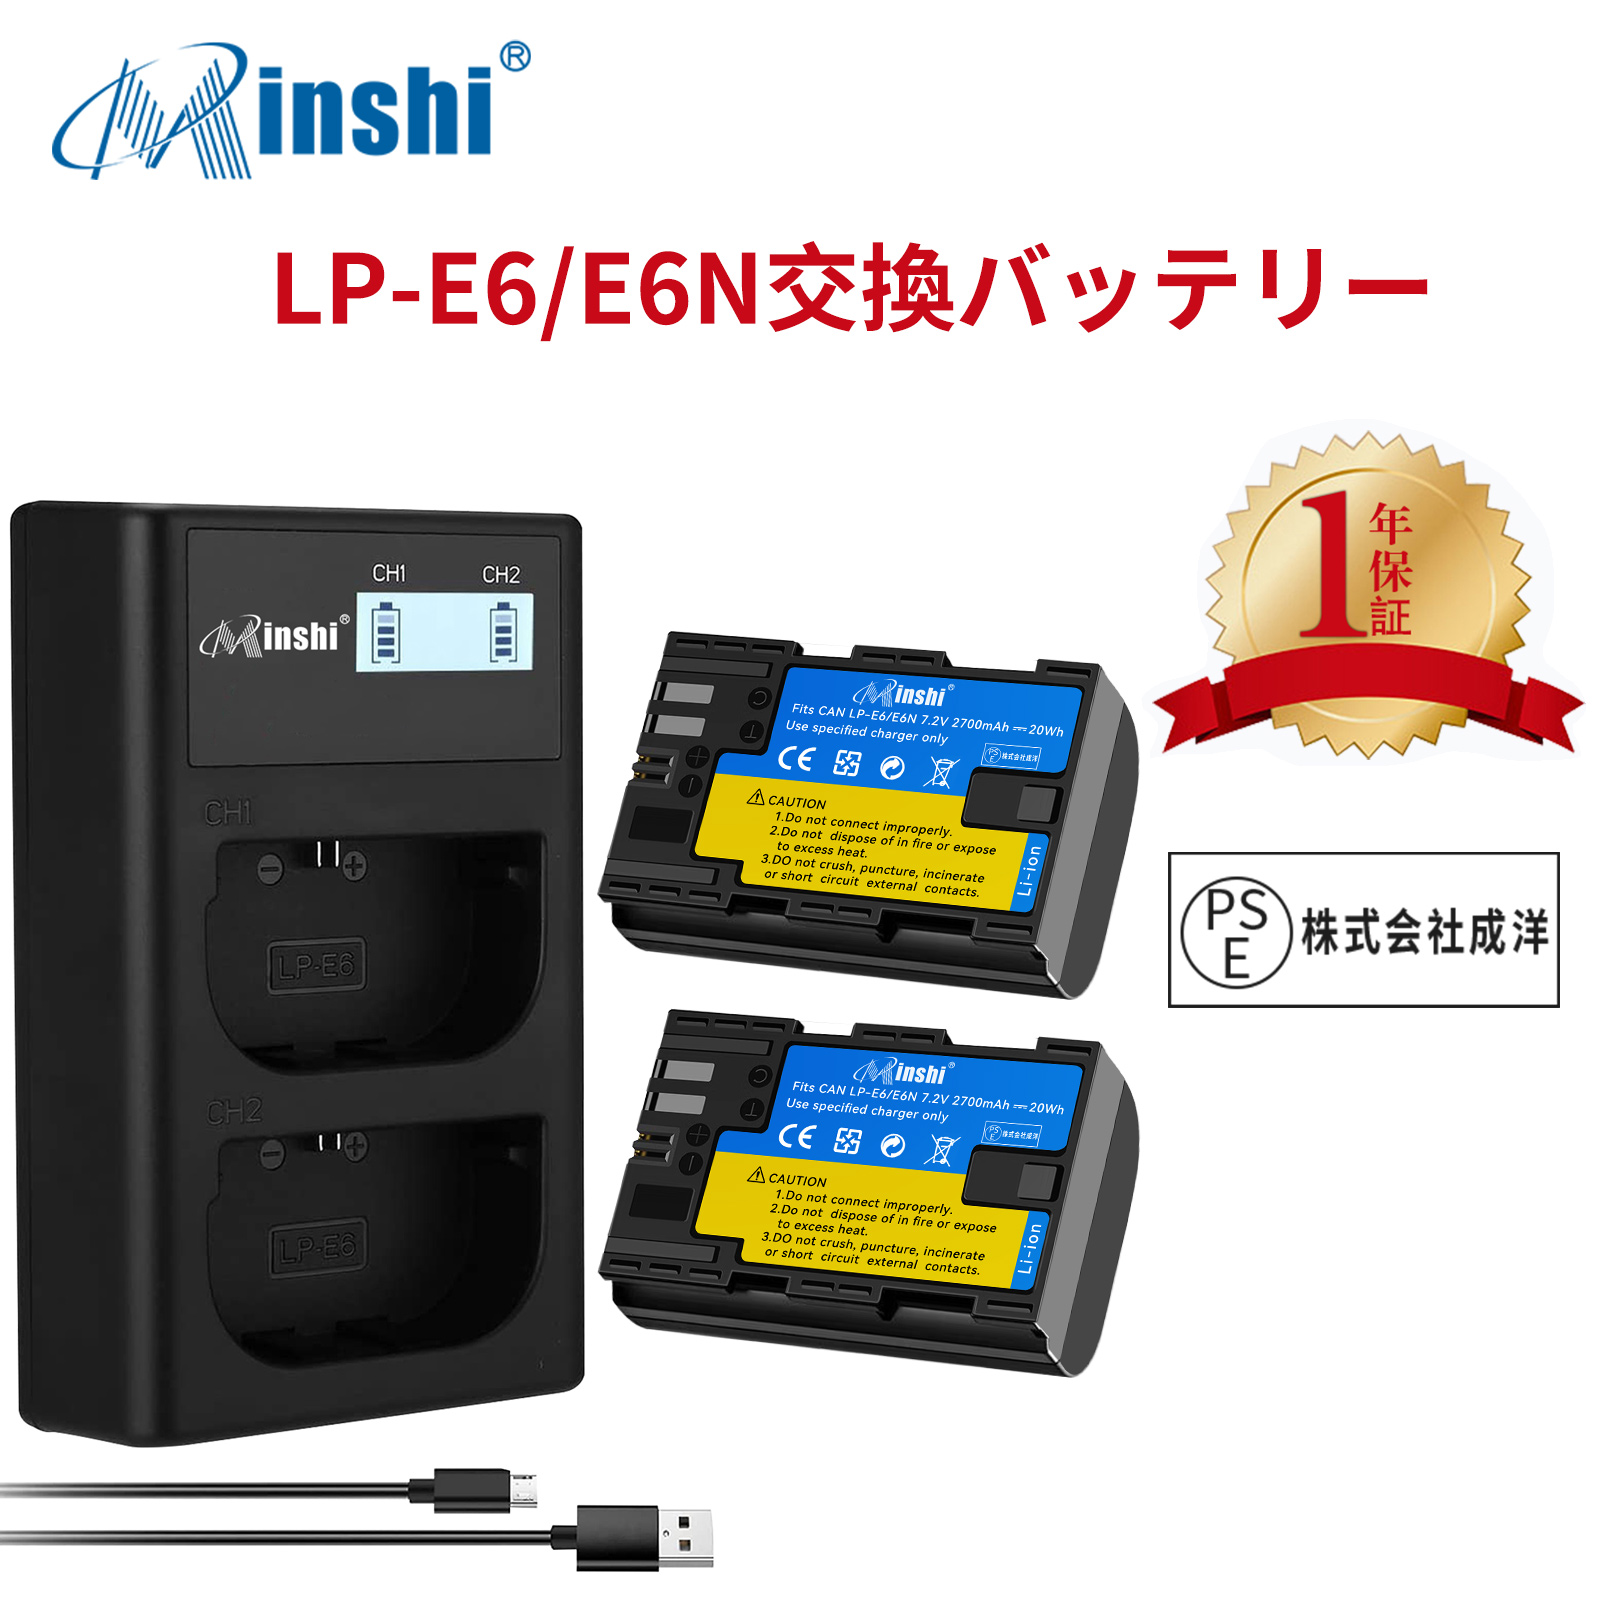 【２個セット】minshi Canon EOS 5D MarkII LP-E6  LP-E6N EOS6D CANON 80D 【2700mAh 7.2V 】【互換急速USBチャージャー】 高品質 LP-E6NH 交換用バッテリー